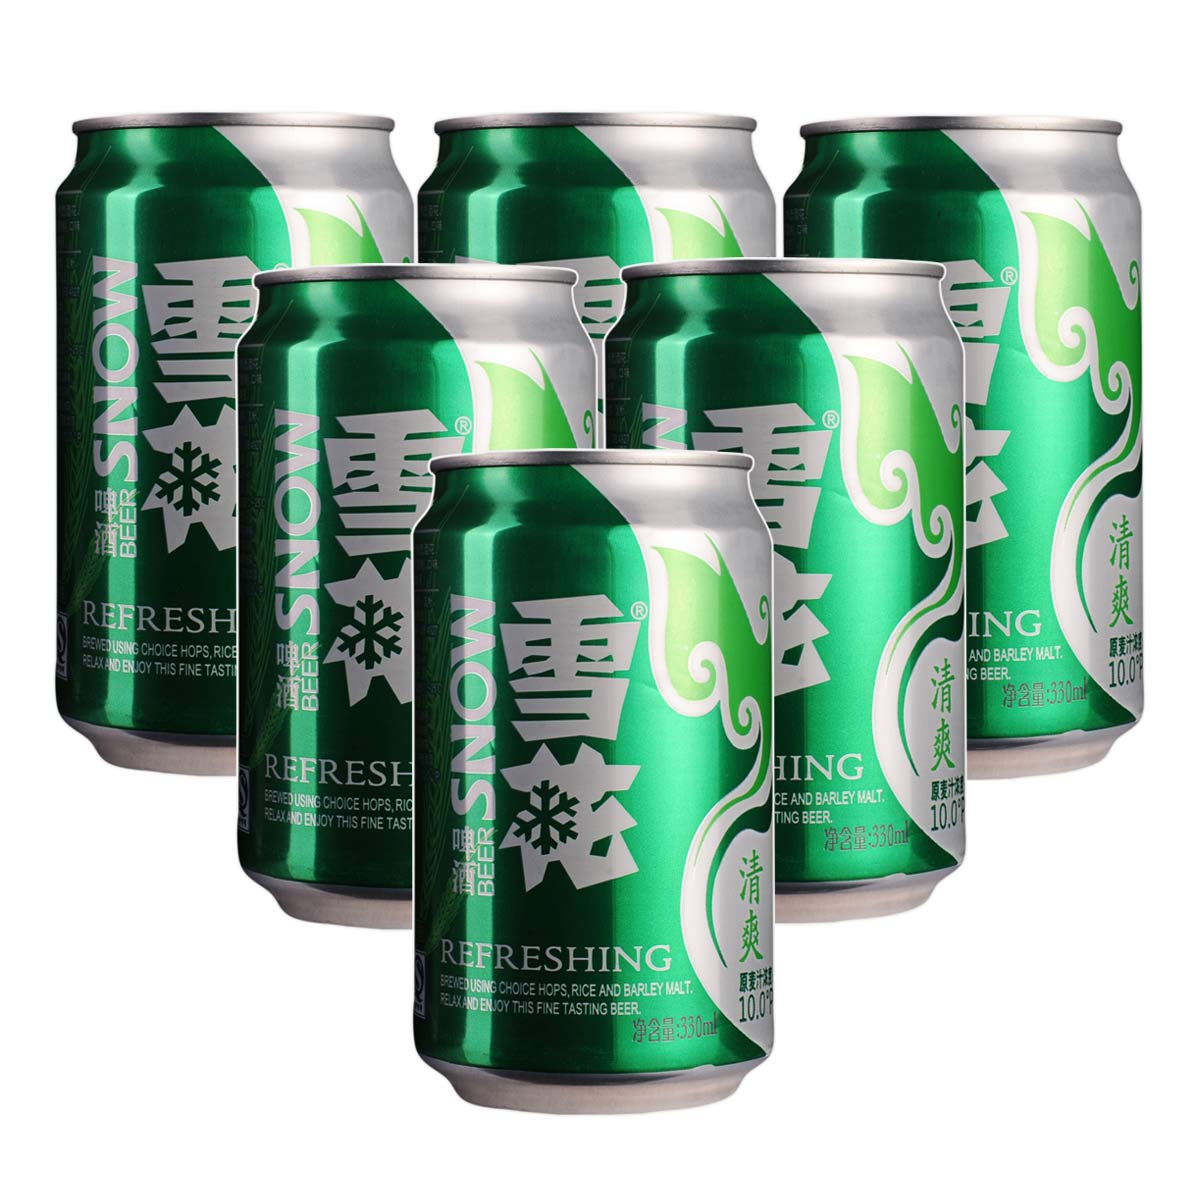 雪花清爽啤酒330ml(6瓶套装) (3.3%Vol):化妆品